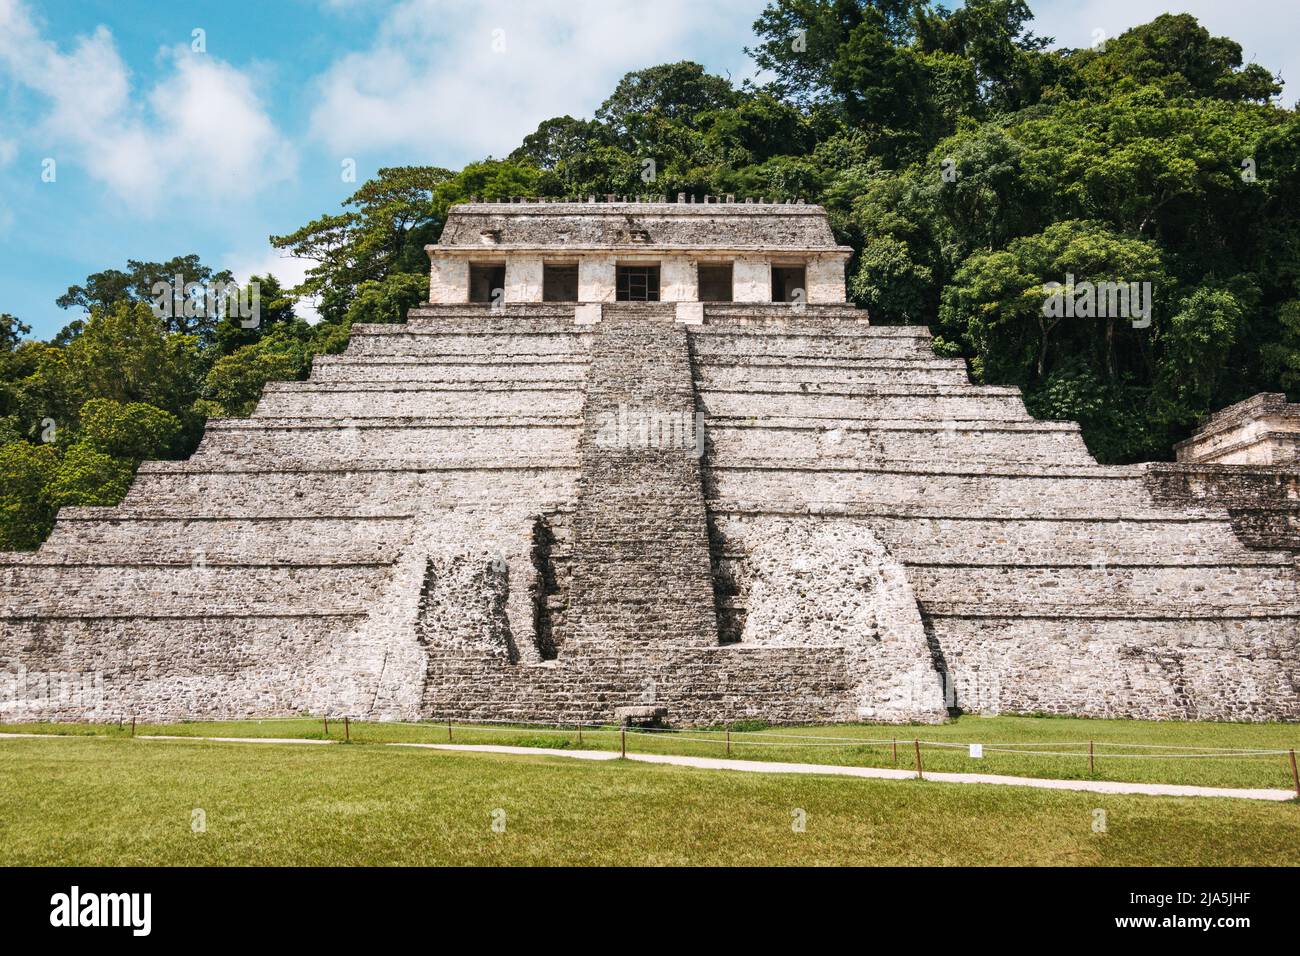 Der Tempel der Inschriften, die größte gestufte Pyramidenstruktur an der archäologischen Stätte der Maya in Palenque im Bundesstaat Chiapas, Mexiko Stockfoto